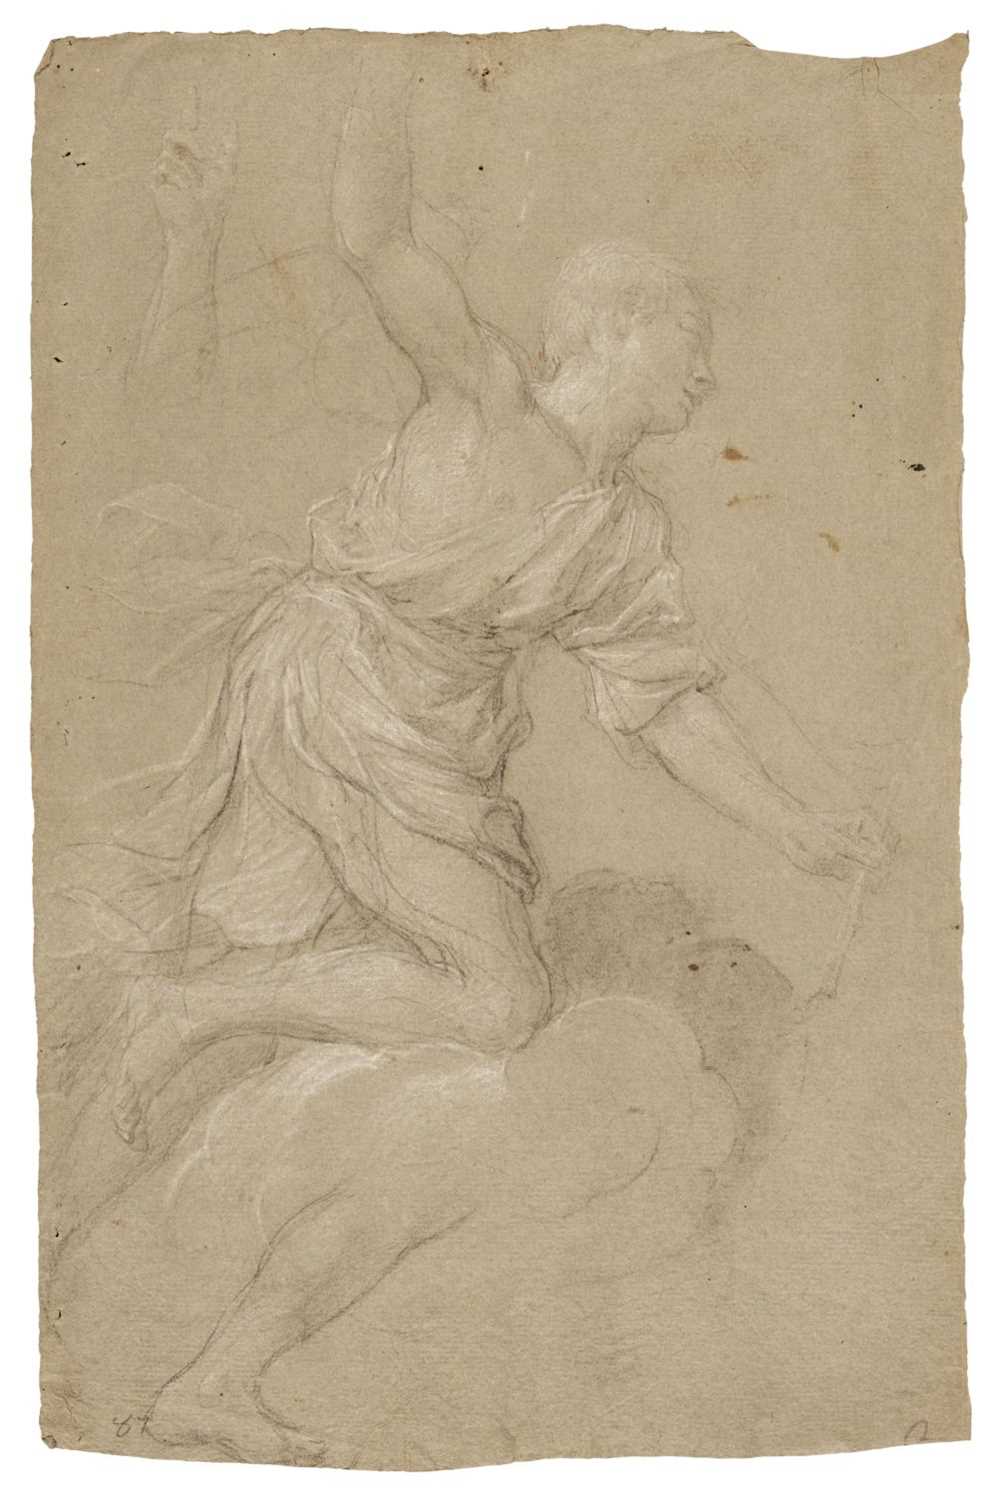 Lot 18 - Domenichino (1581-1641). Study of male figure, & Study of an angel, 17th century